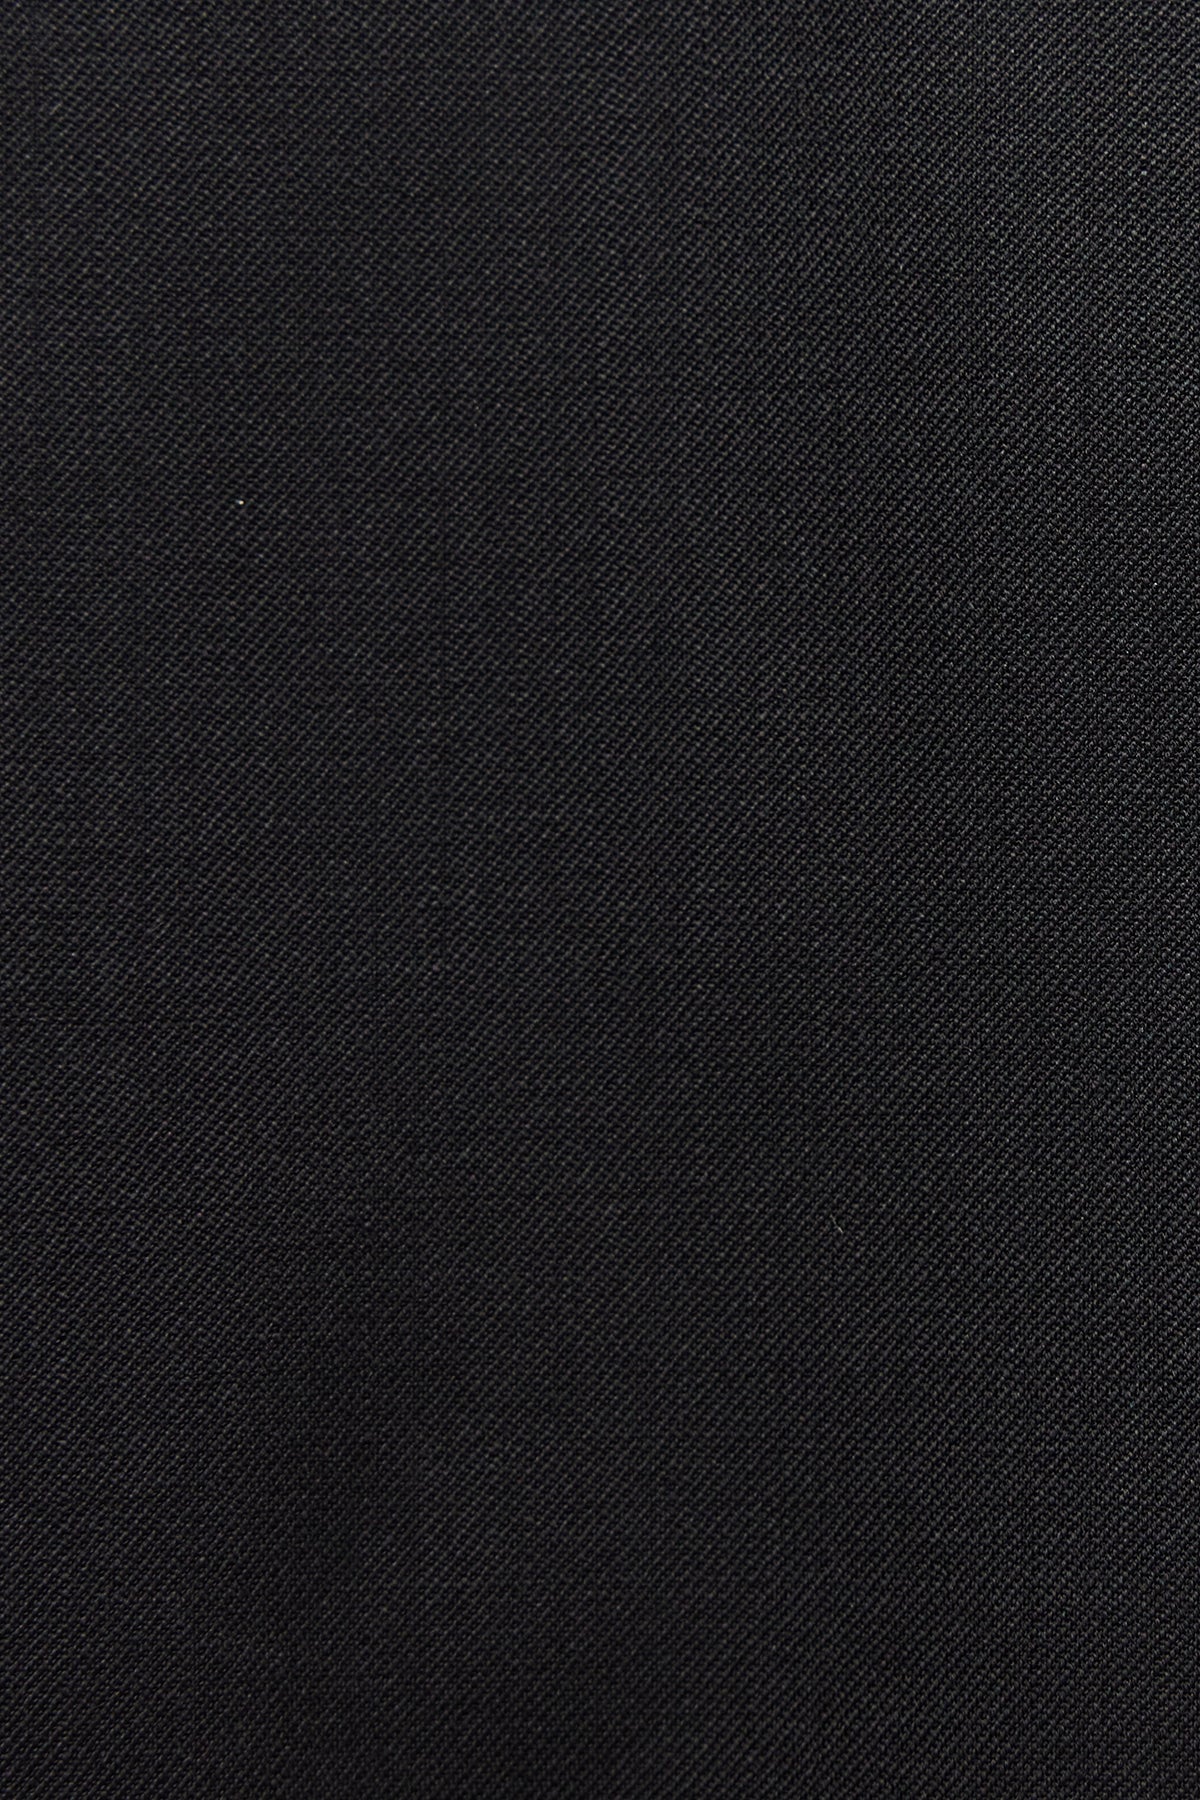 Ives - Black Suit